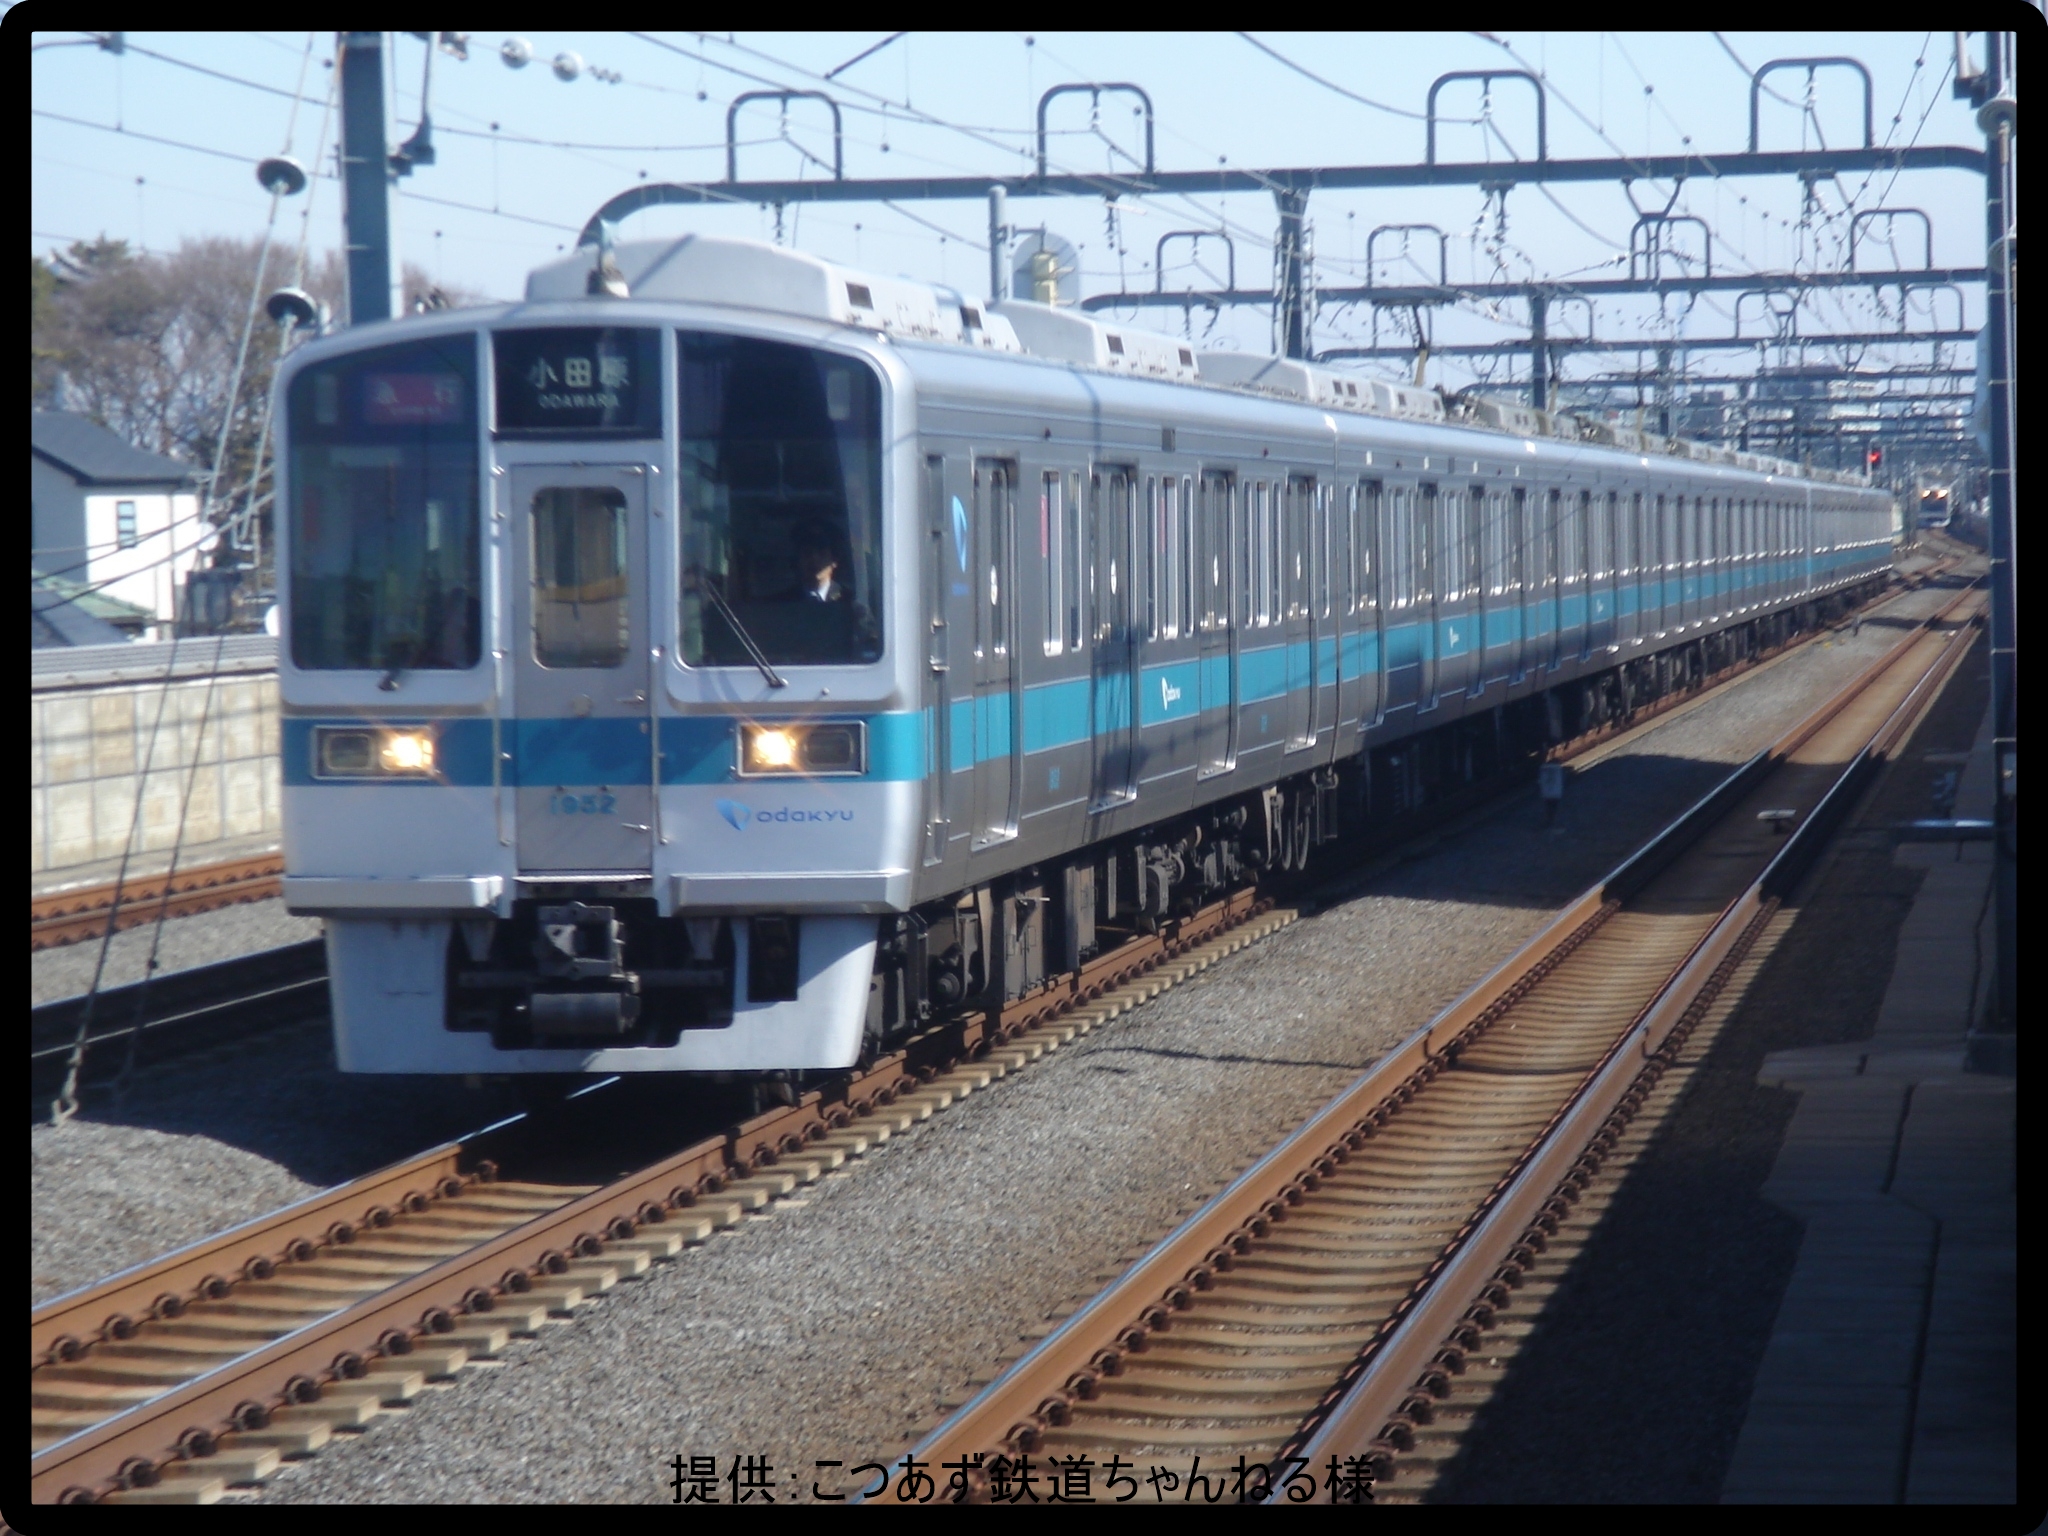 小田急電鉄 小田急1000形とは どんな車両 分かりやすく解説 Japan Railway Com